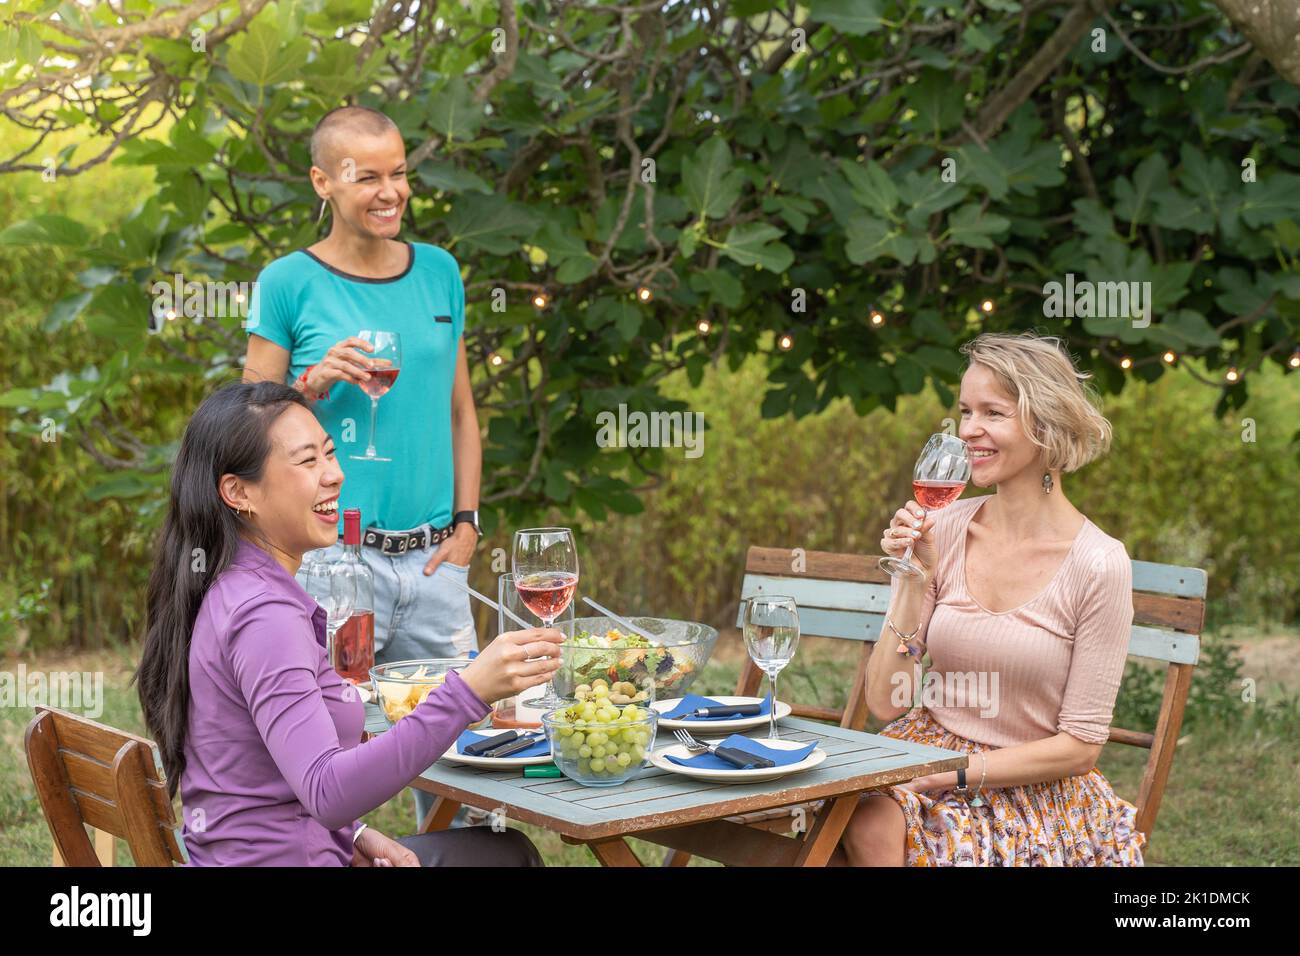 Gruppe von reifen glücklichen Freunden mit Wein zusammen in der Dinner-Party. Lächeln, Heiterkeit Konzept. Stockfoto